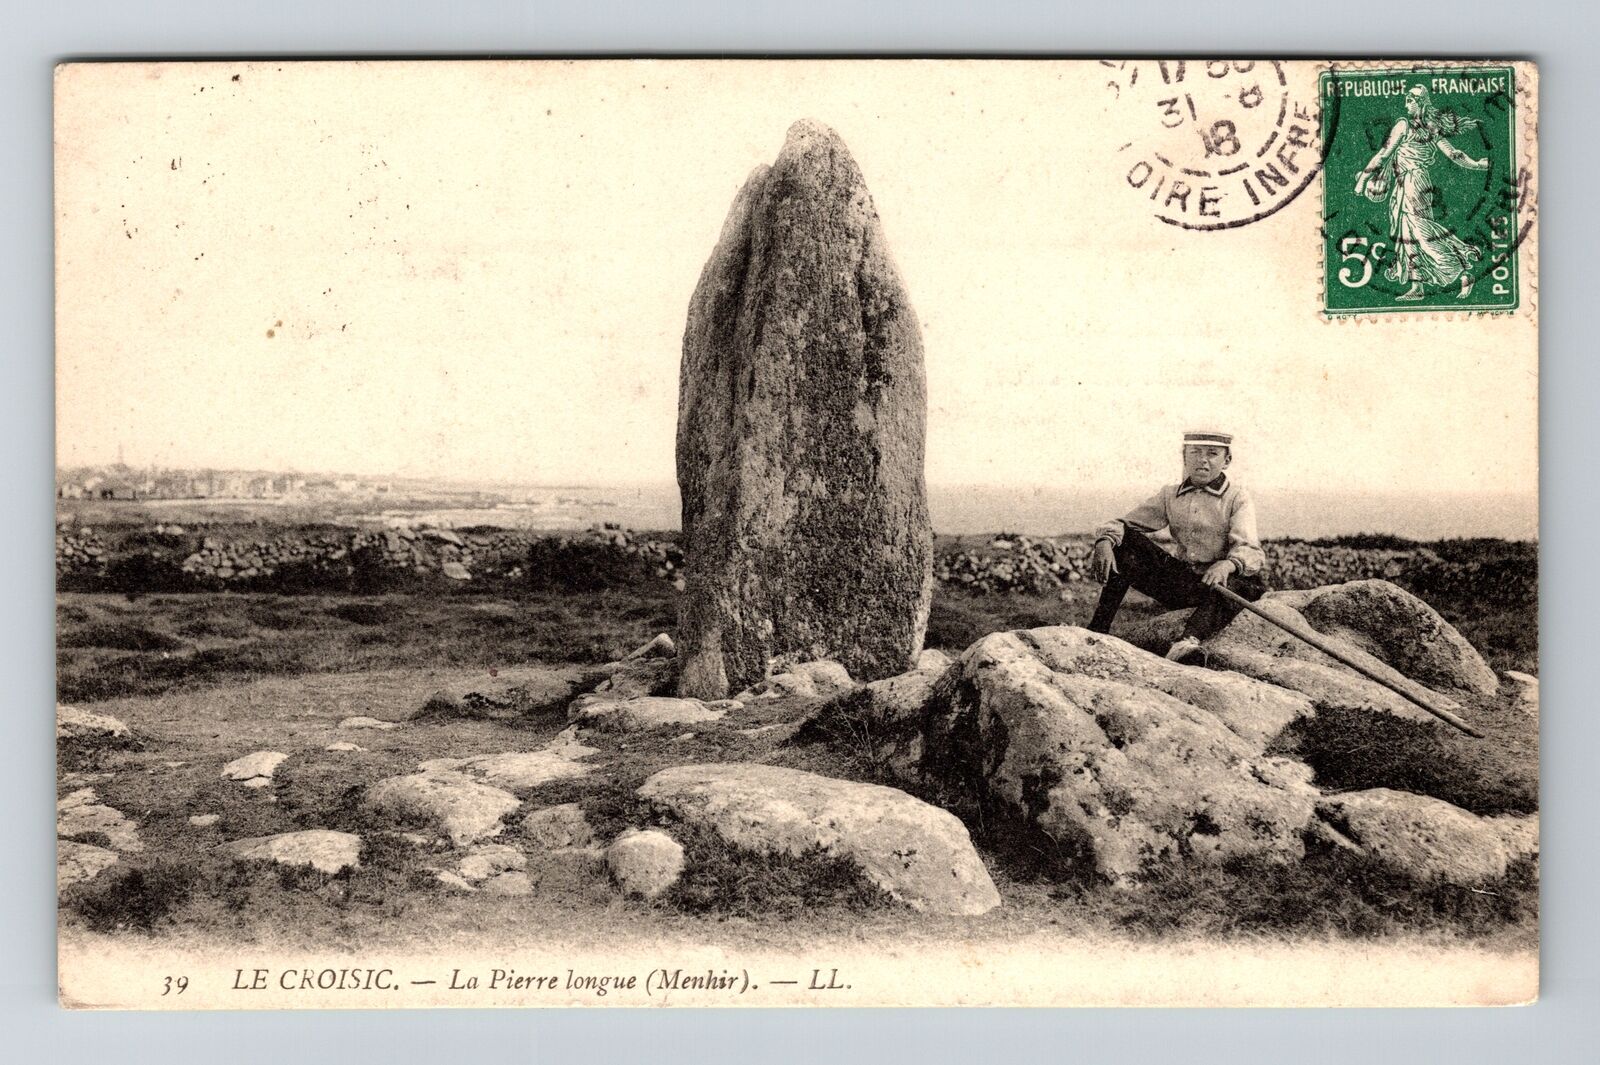 Le Croisic France, La Pierre longue Menhir, Vintage Postcard